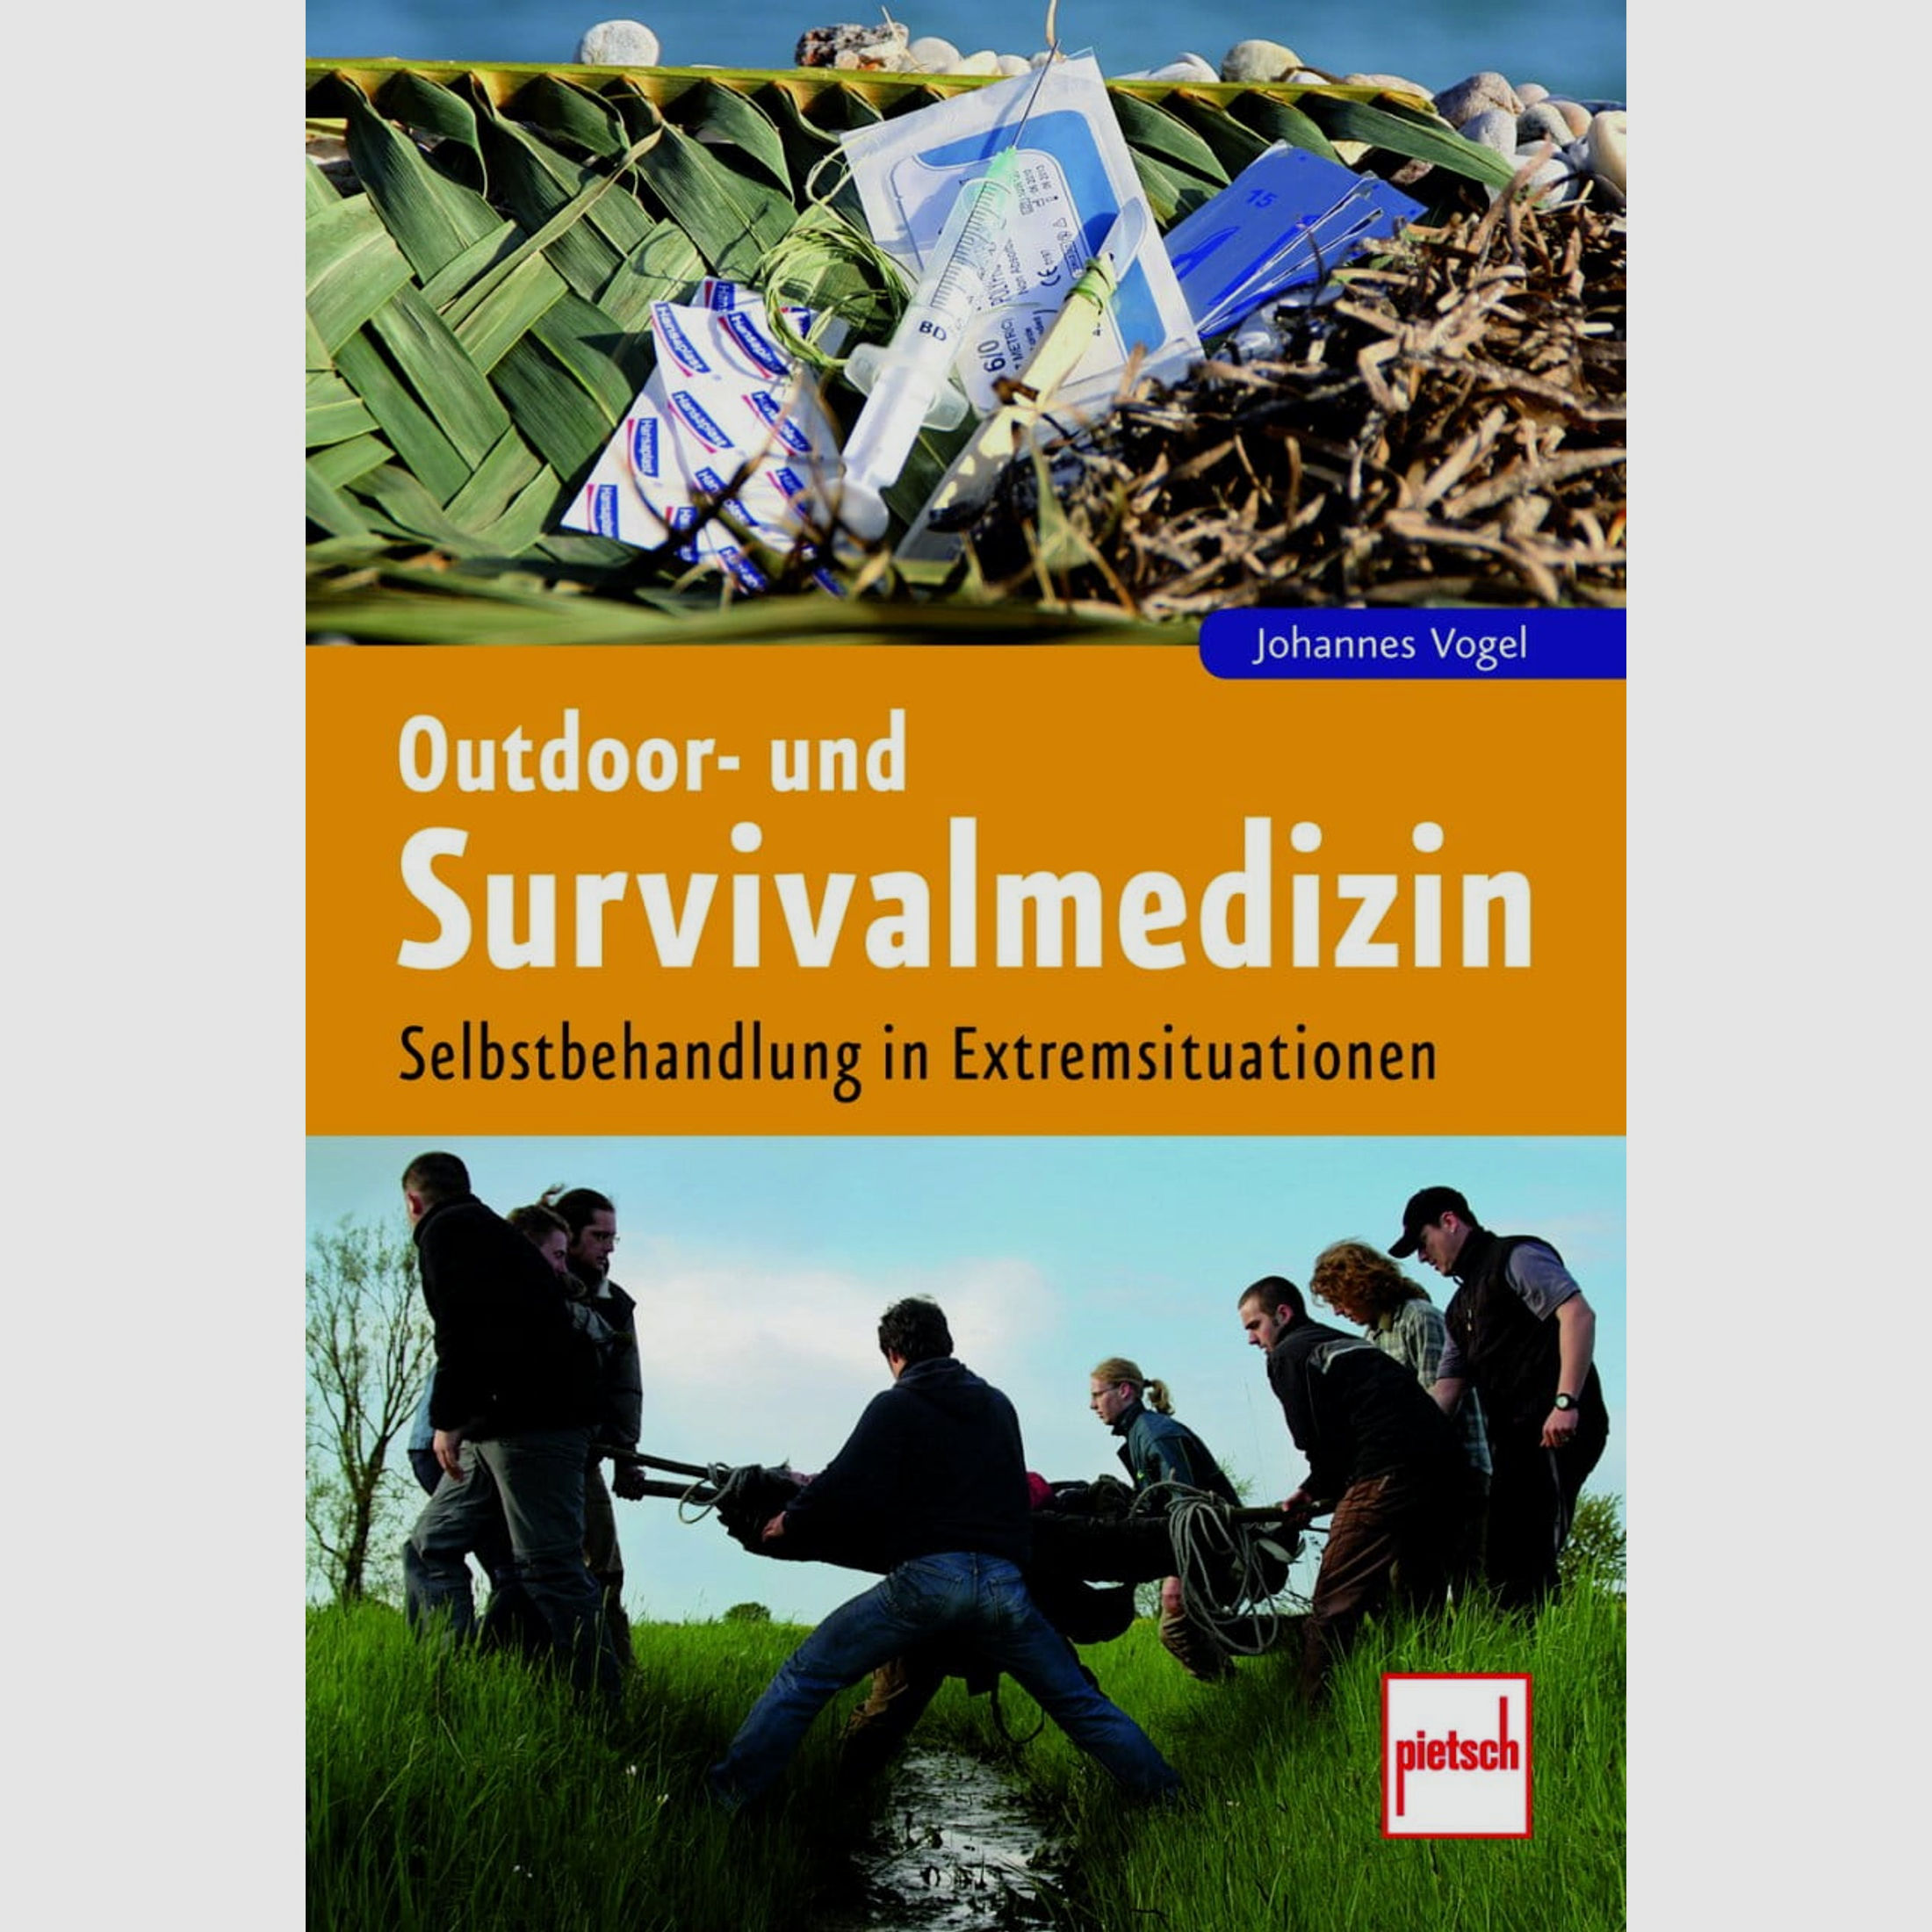 Outdoor- und Survivalmedizin: Selbstbehandlung in Extremsituationen